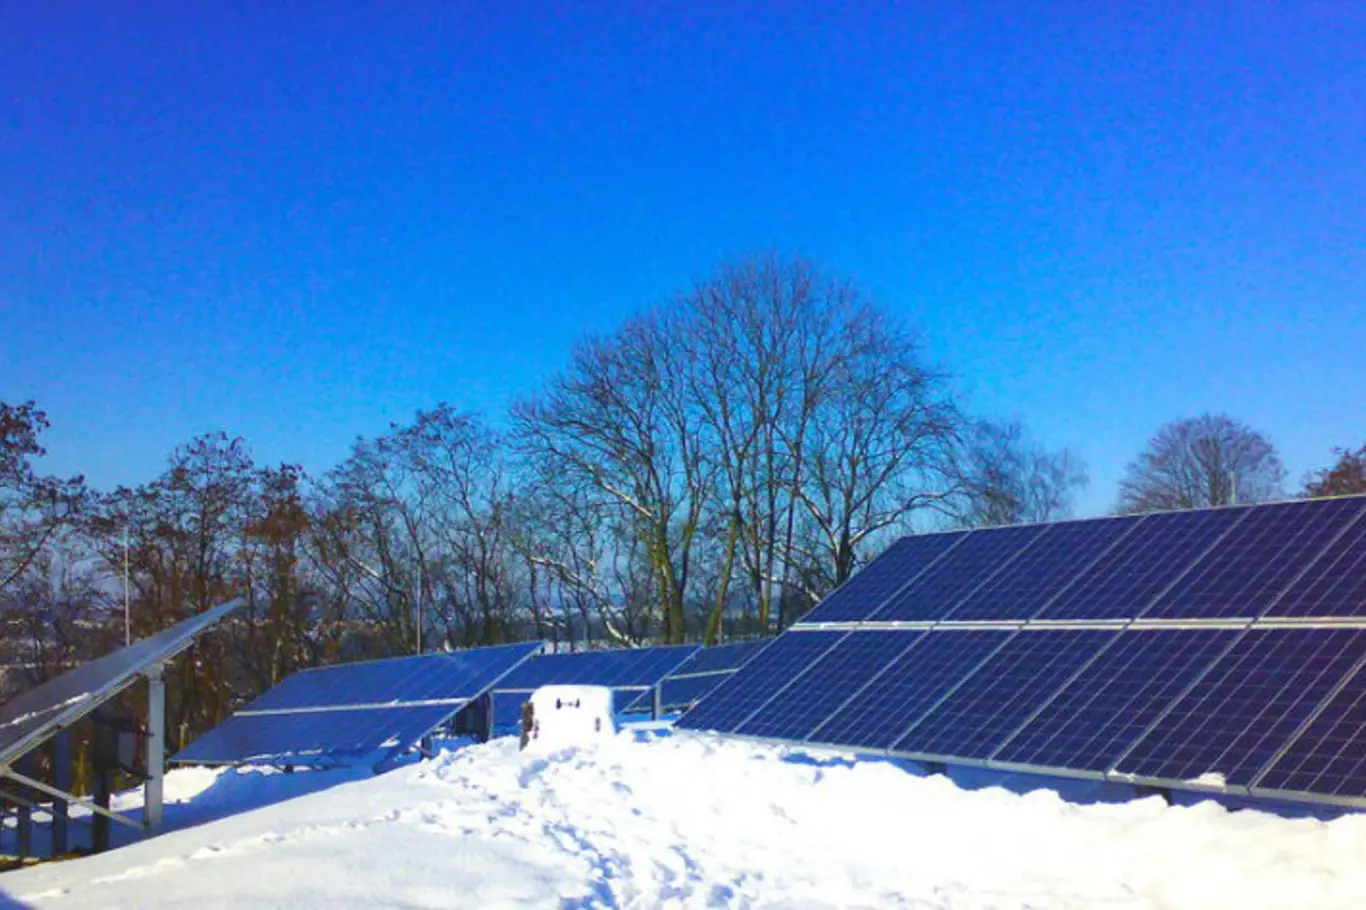 Jedna z fotovoltaik skupiny Photon Energy, nacházející se u Sychrova na Liberecku.